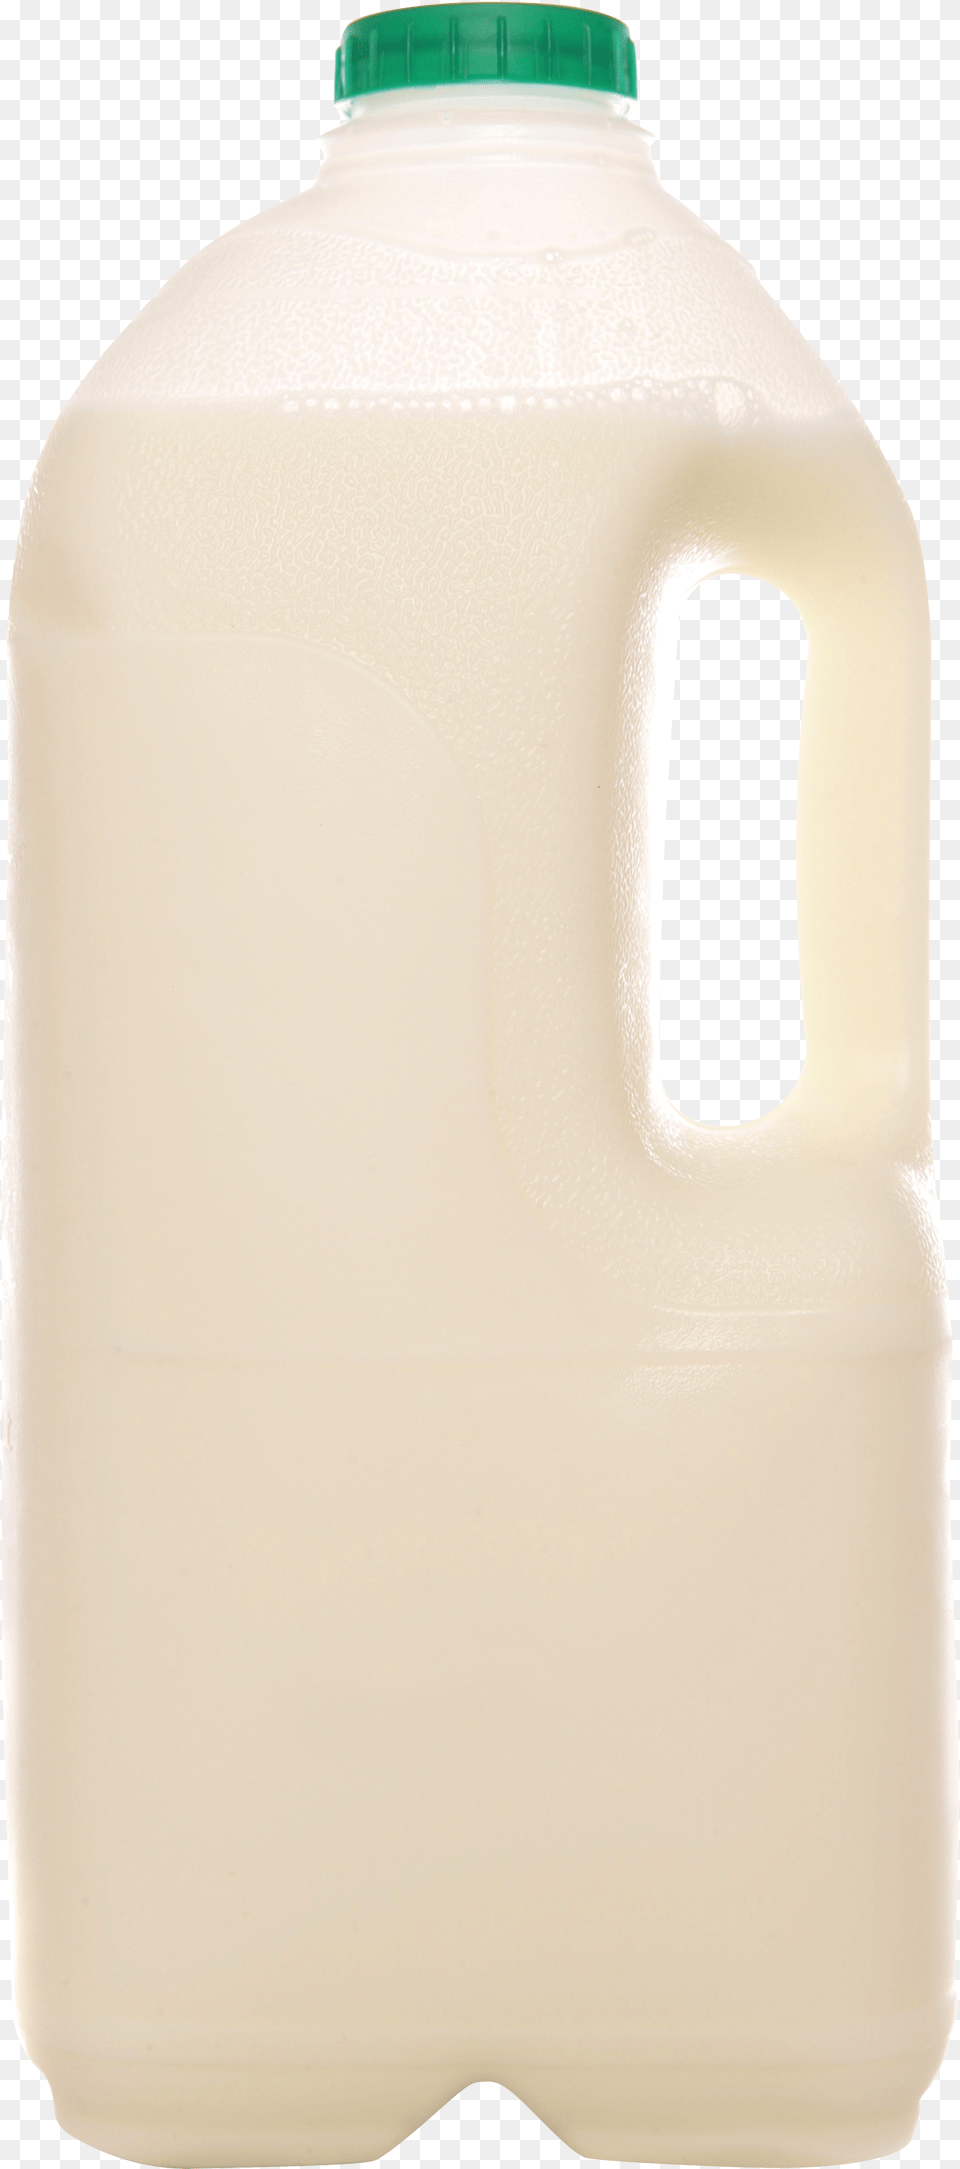 Milk Images Plastic Bottle, Beverage Free Png Download